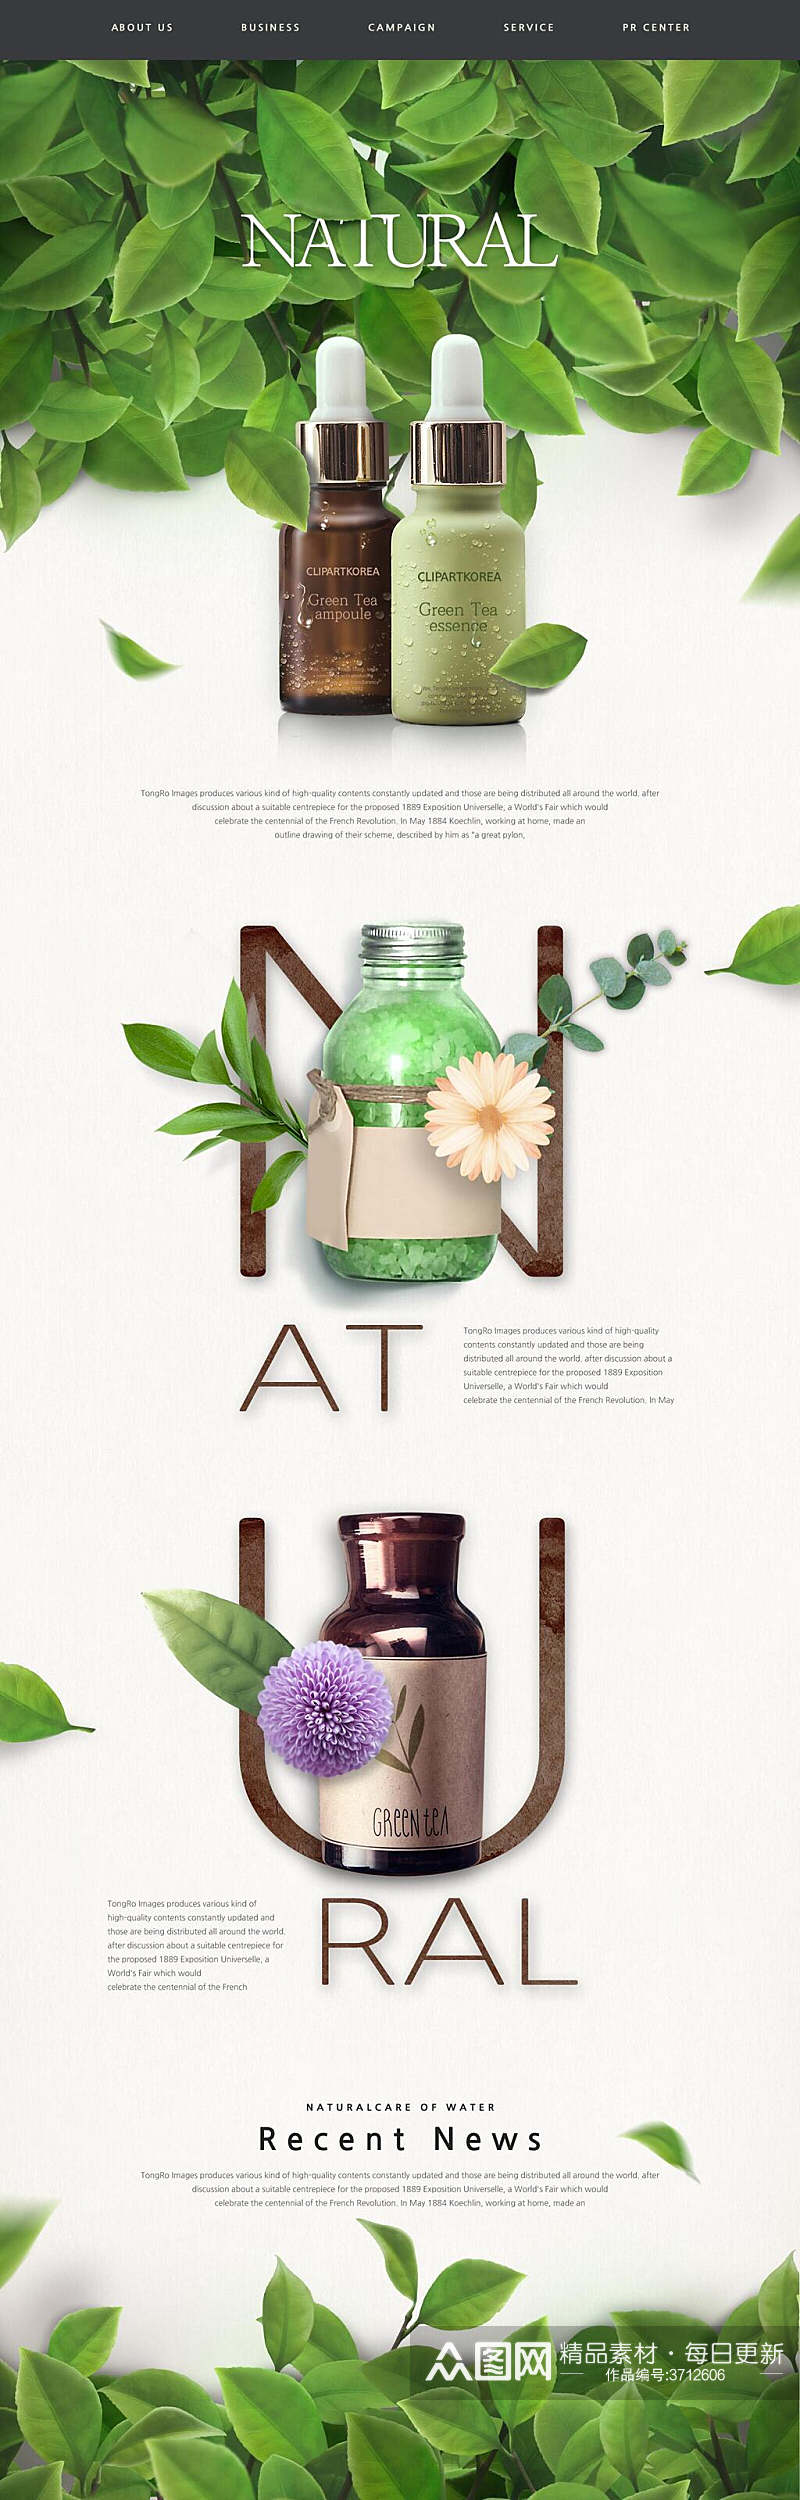 小清新旅绿植花卉化妆品网页UI设计素材